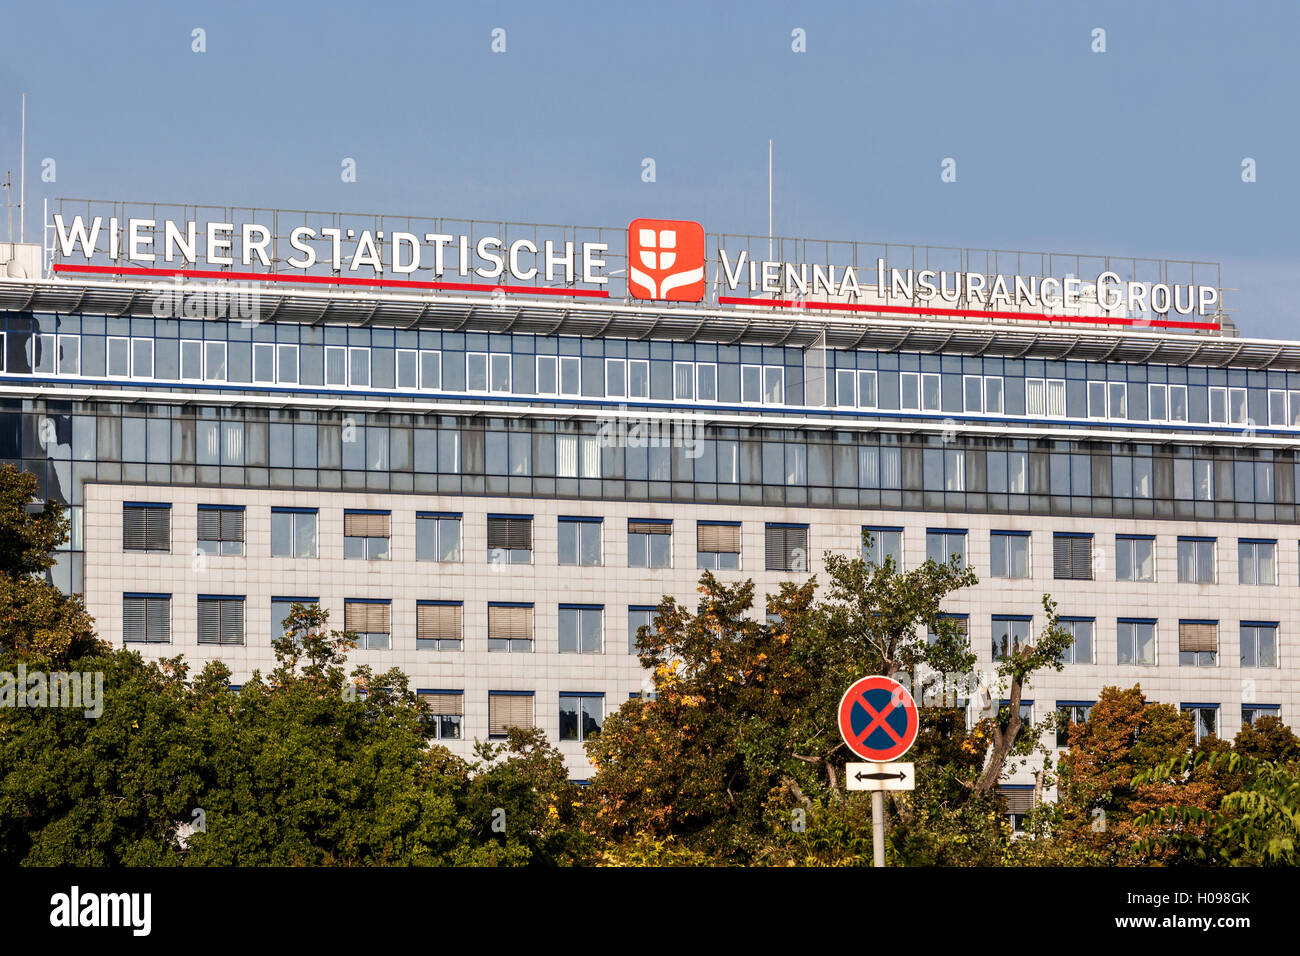 Wiener Stadtische, logo, sign, Vienna, Austria Stock Photo